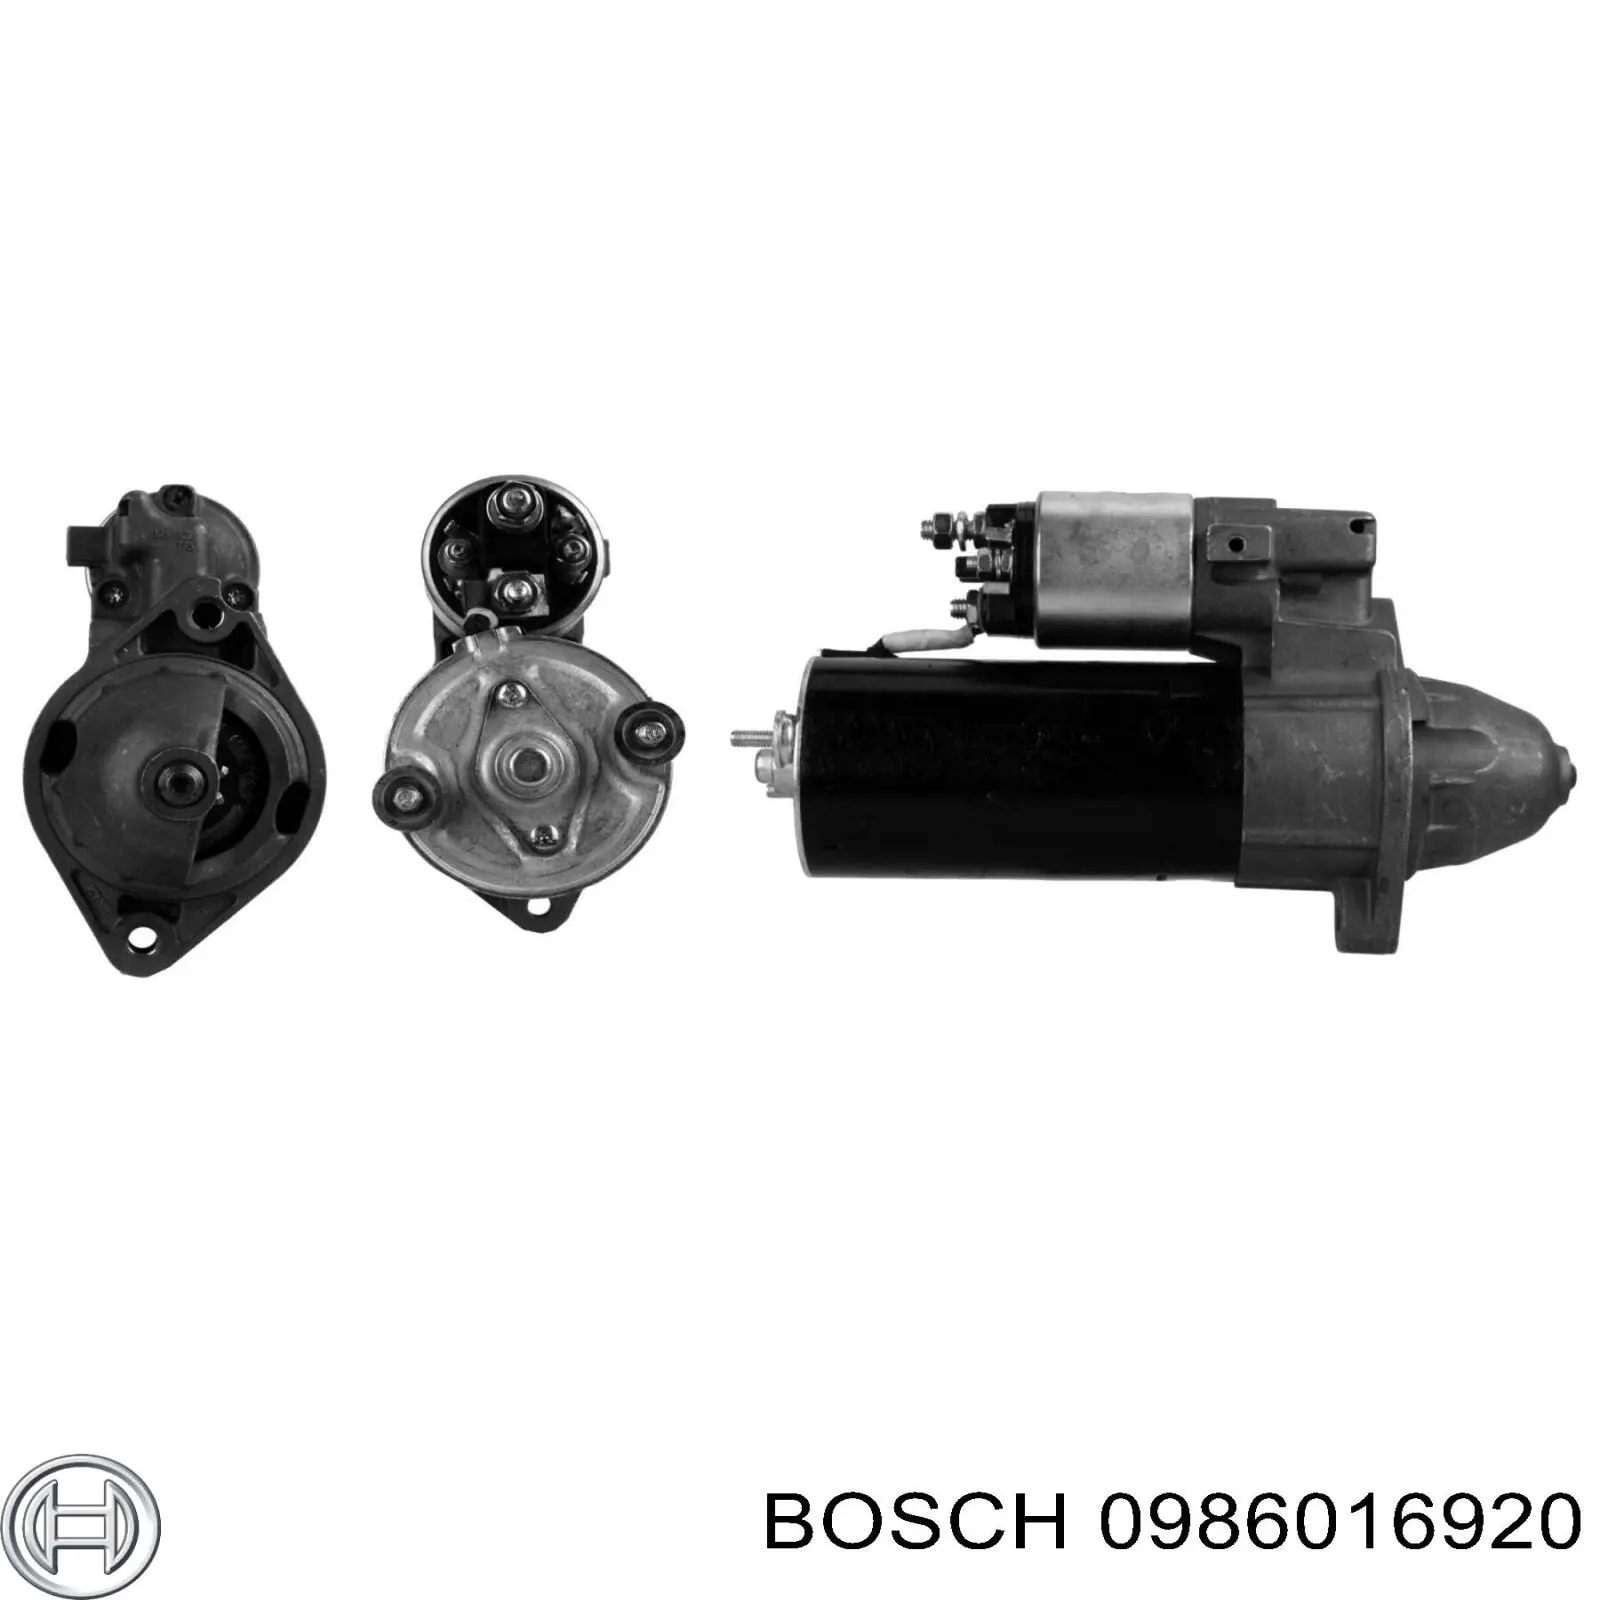 Motor de arranque 0986016920 Bosch